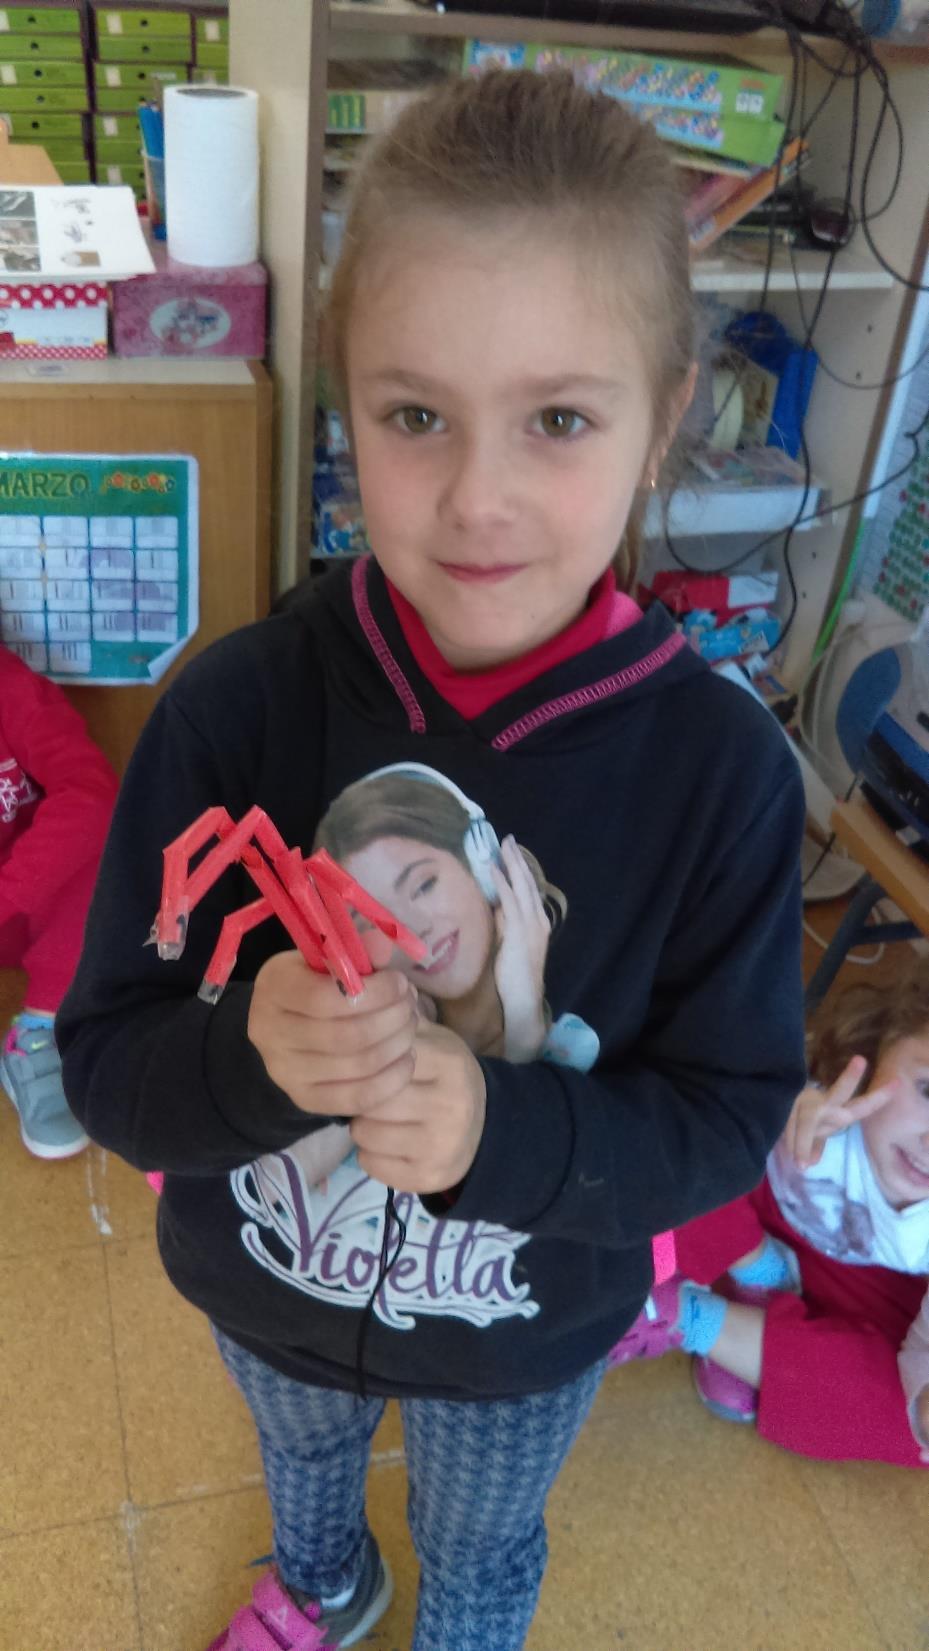 Lorena construyó en su casa una mano robótica con pajitas e hilos y nos la